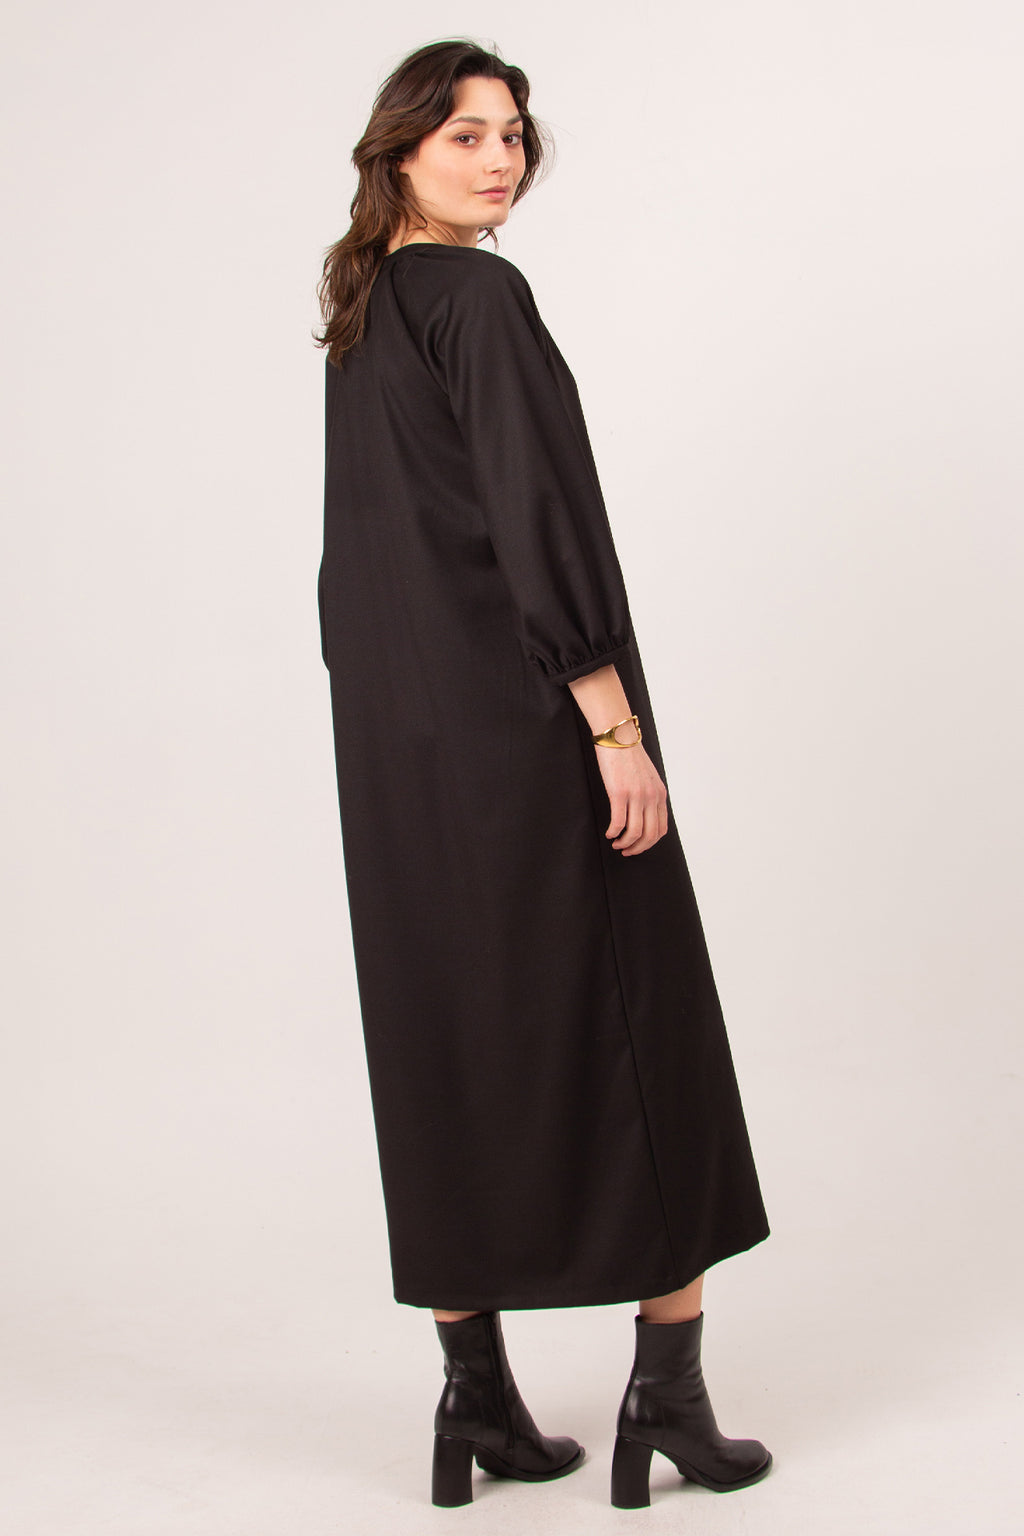 Claudette lange zwarte jurk